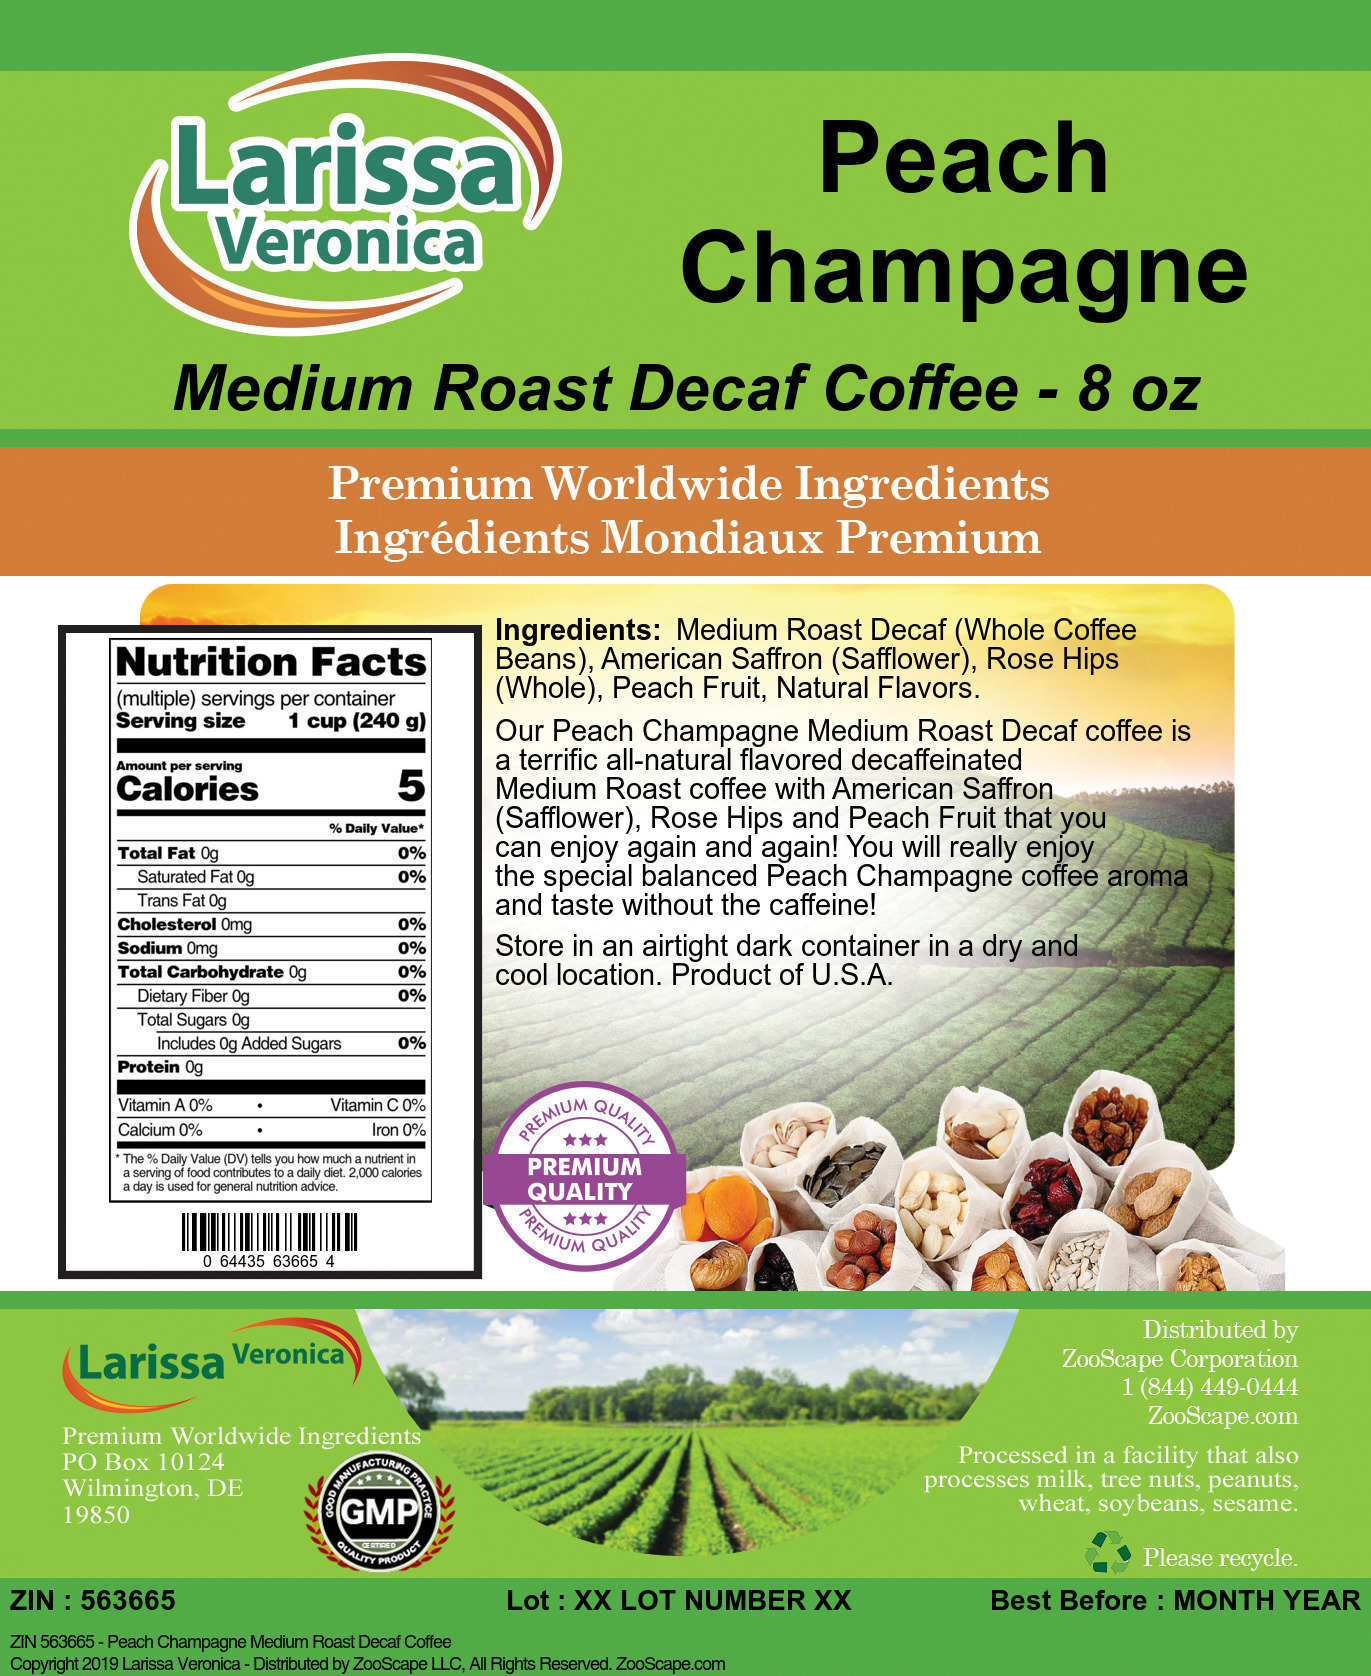 Peach Champagne Medium Roast Decaf Coffee - Label